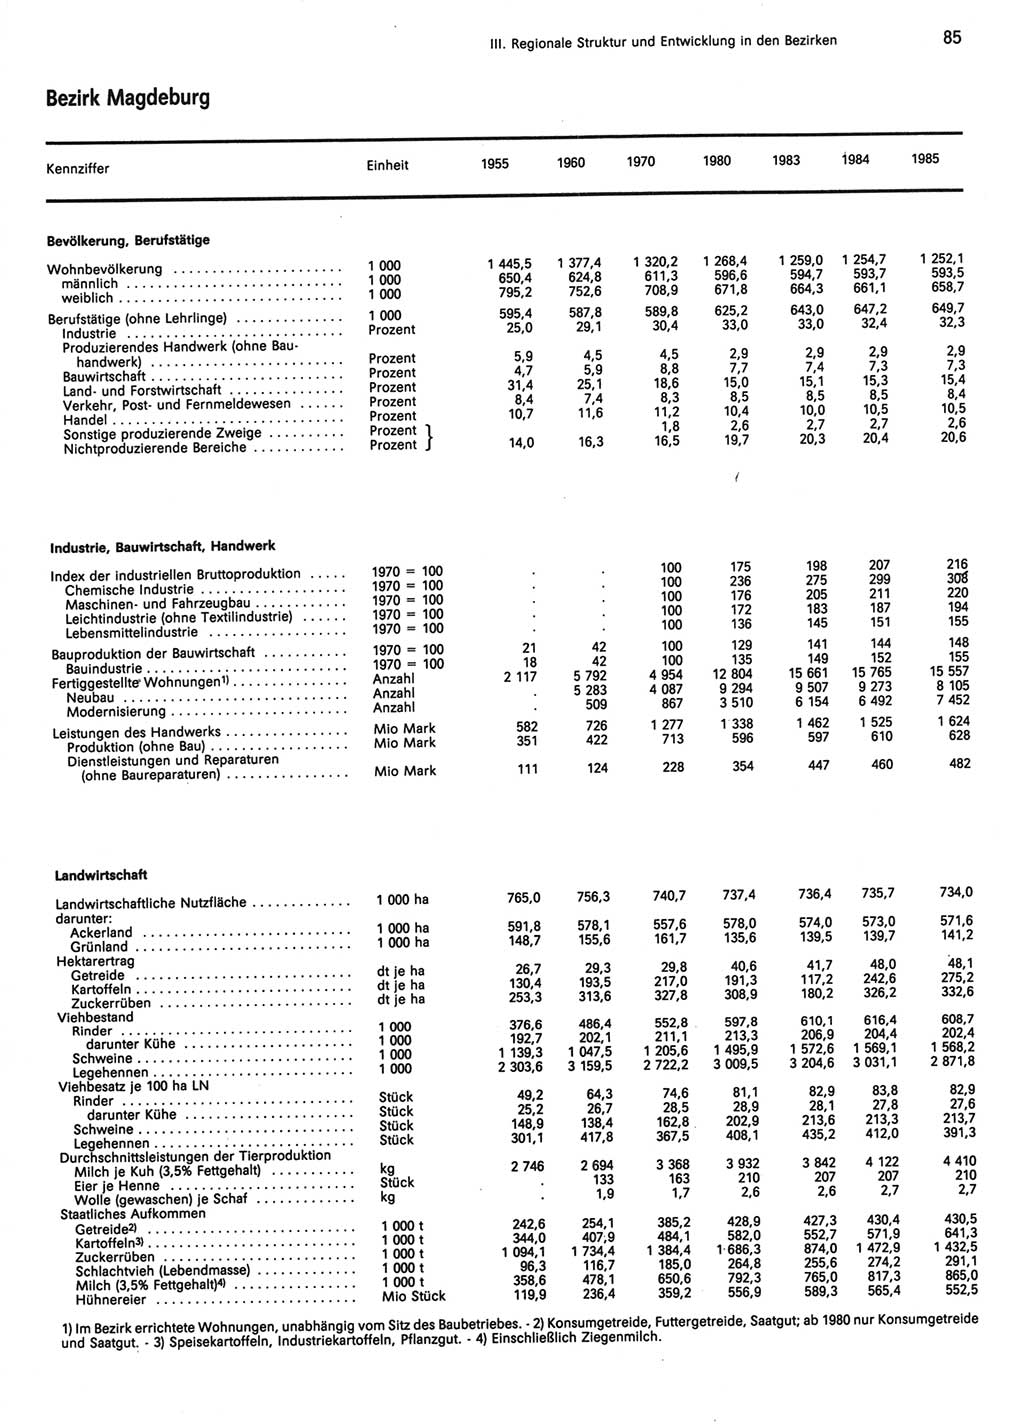 Statistisches Jahrbuch der Deutschen Demokratischen Republik (DDR) 1986, Seite 85 (Stat. Jb. DDR 1986, S. 85)